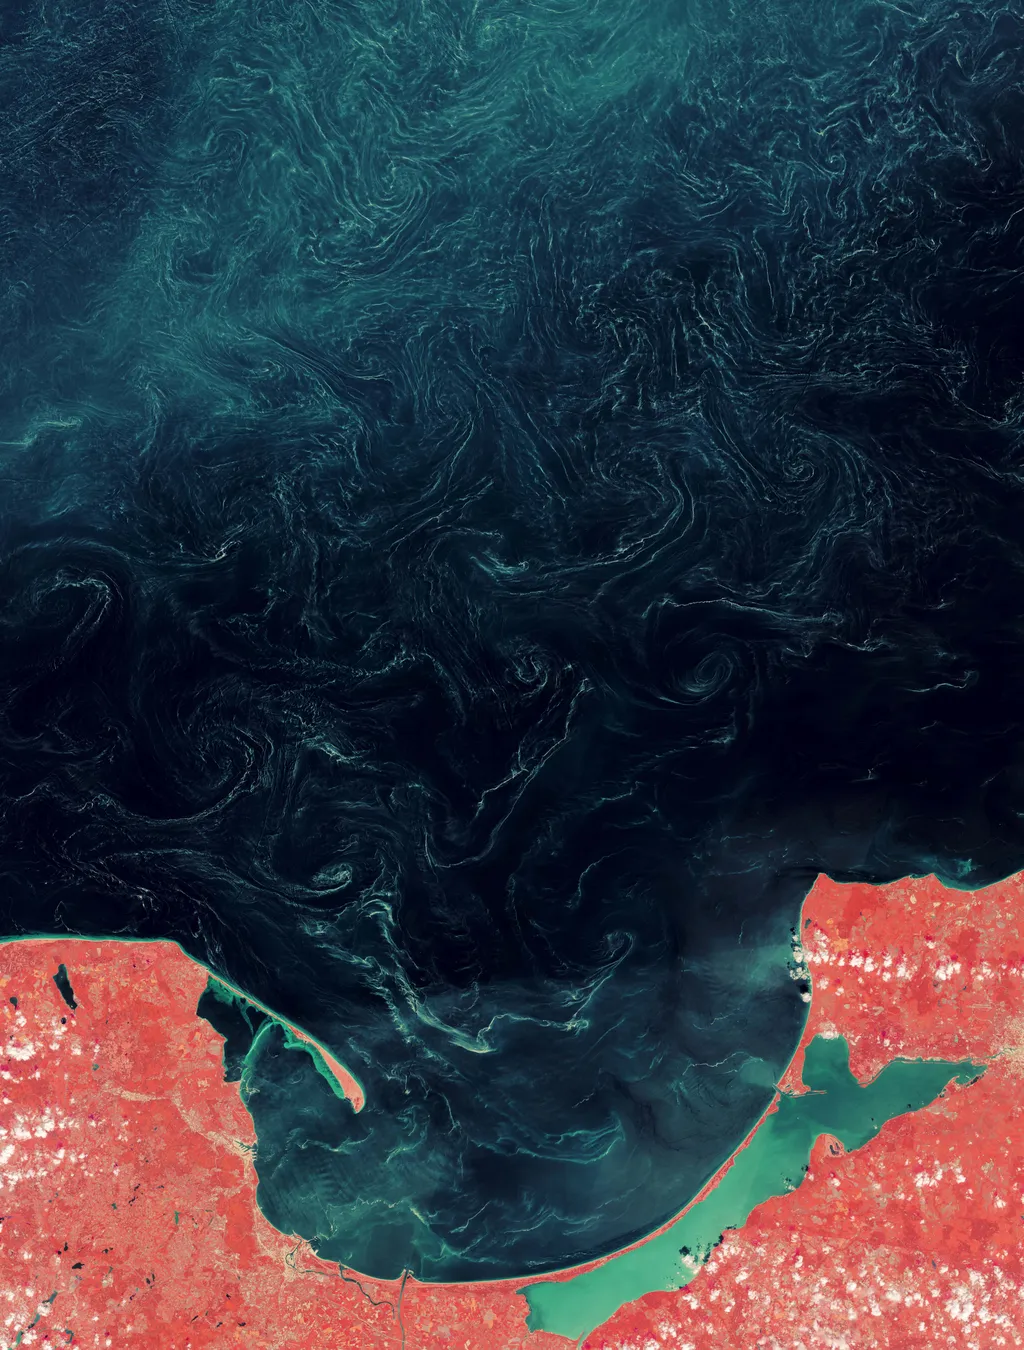 Espirais formadas por pólen em imagem de satélite em falsa cor (Imagem: ESA/NASA Earth Observatory)